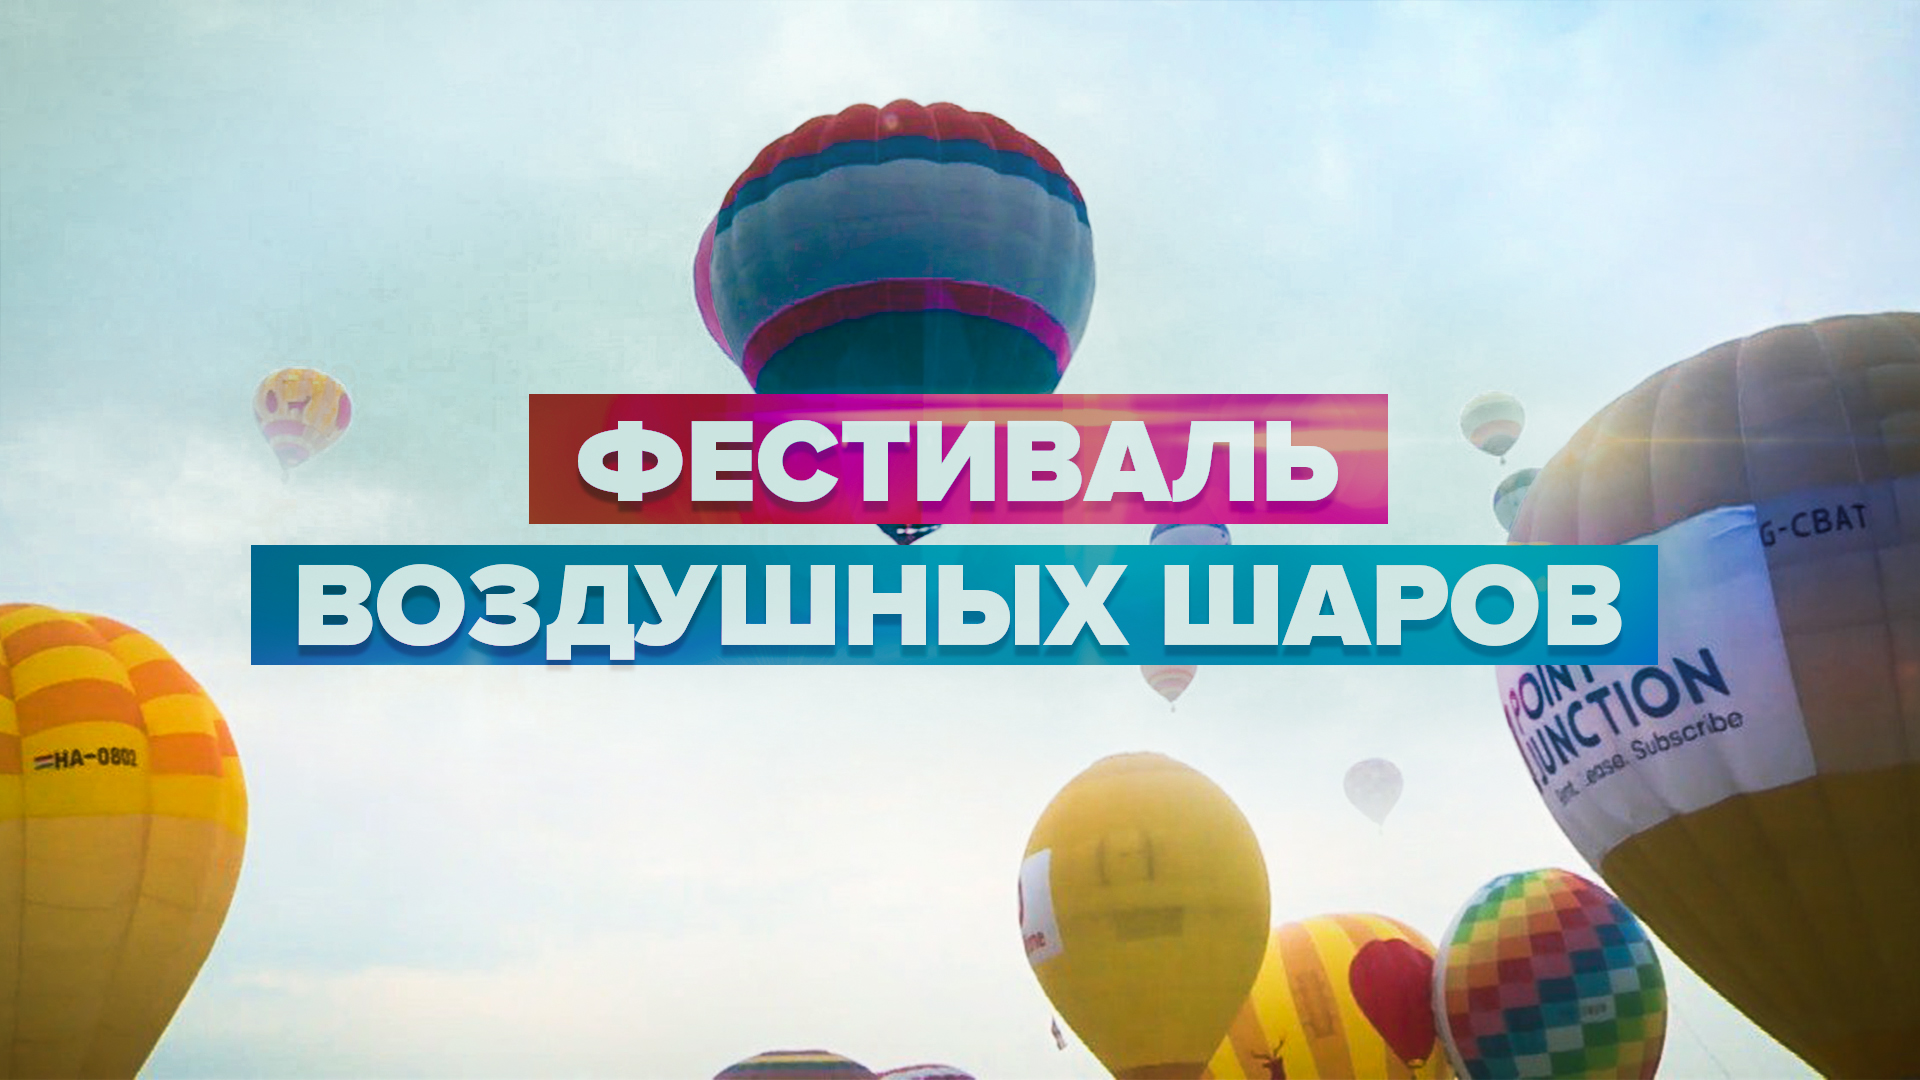 В Дохе прошёл третий фестиваль воздушных шаров — видео